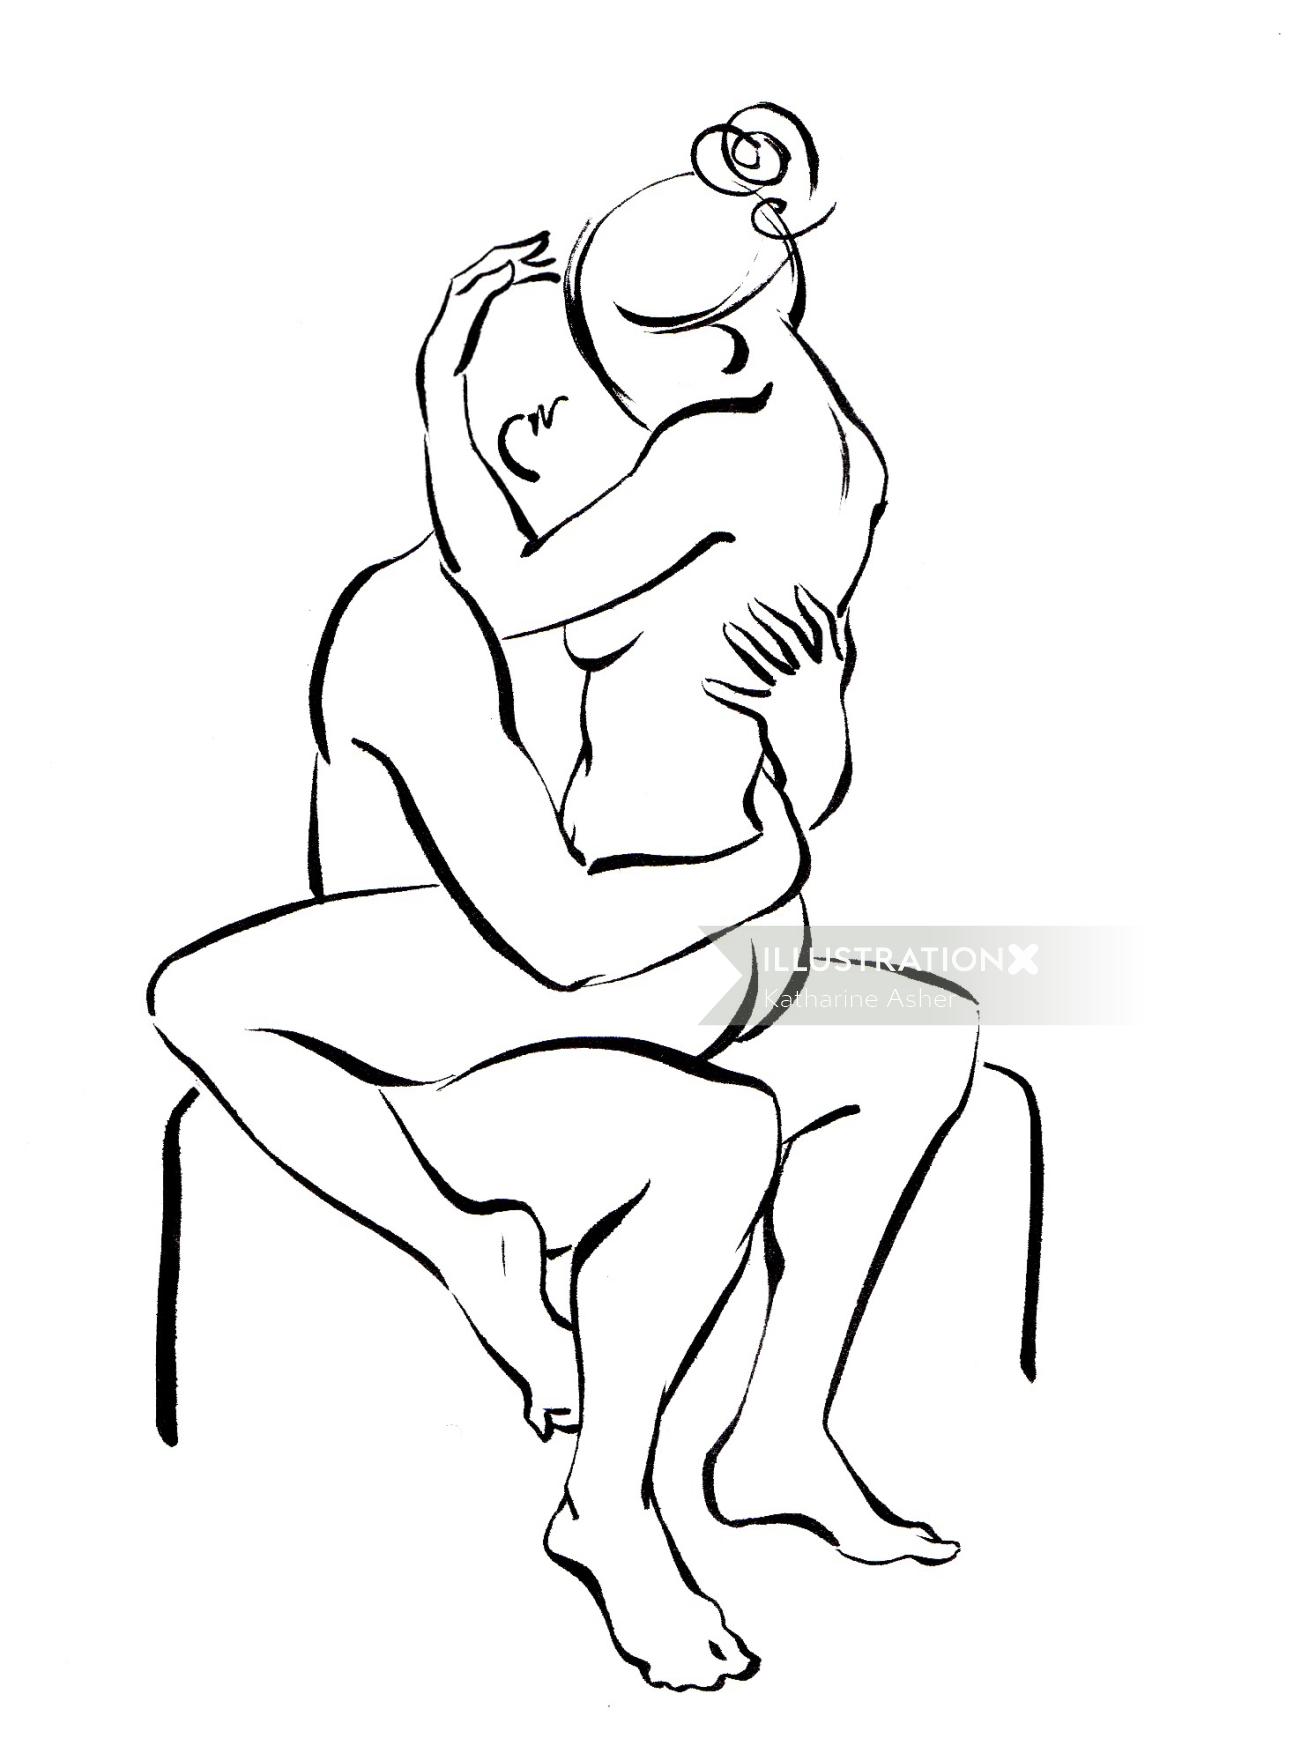 Une illustration des positions sexuelles classiques